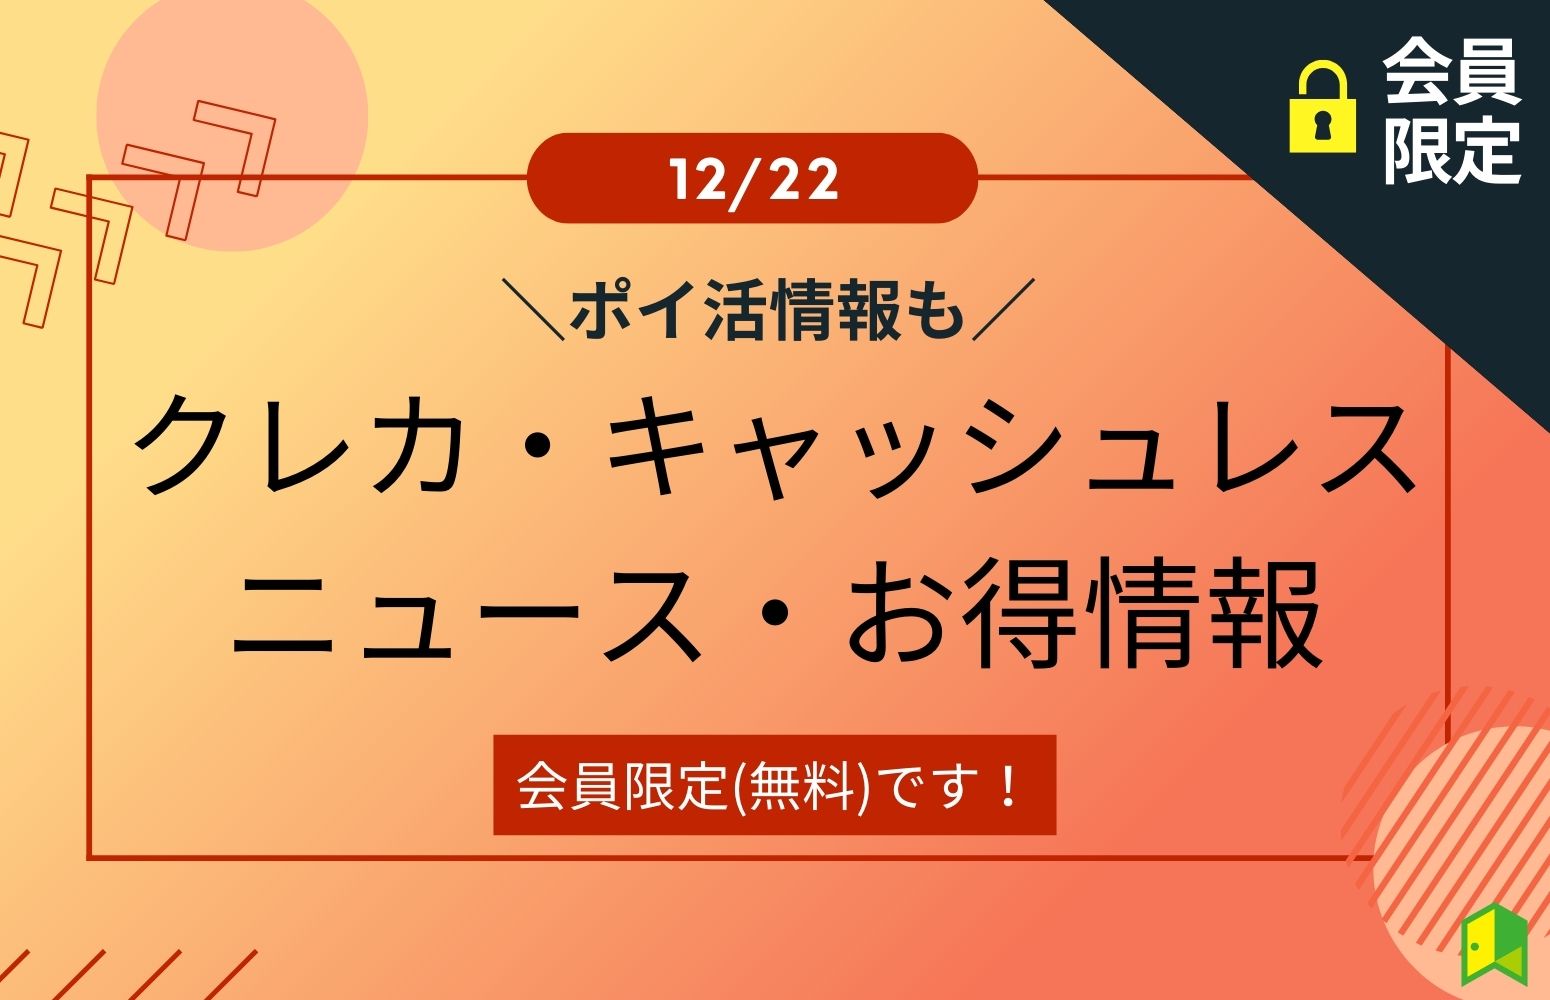 クレカ・キャッシュレスニュース・お得情報12/22